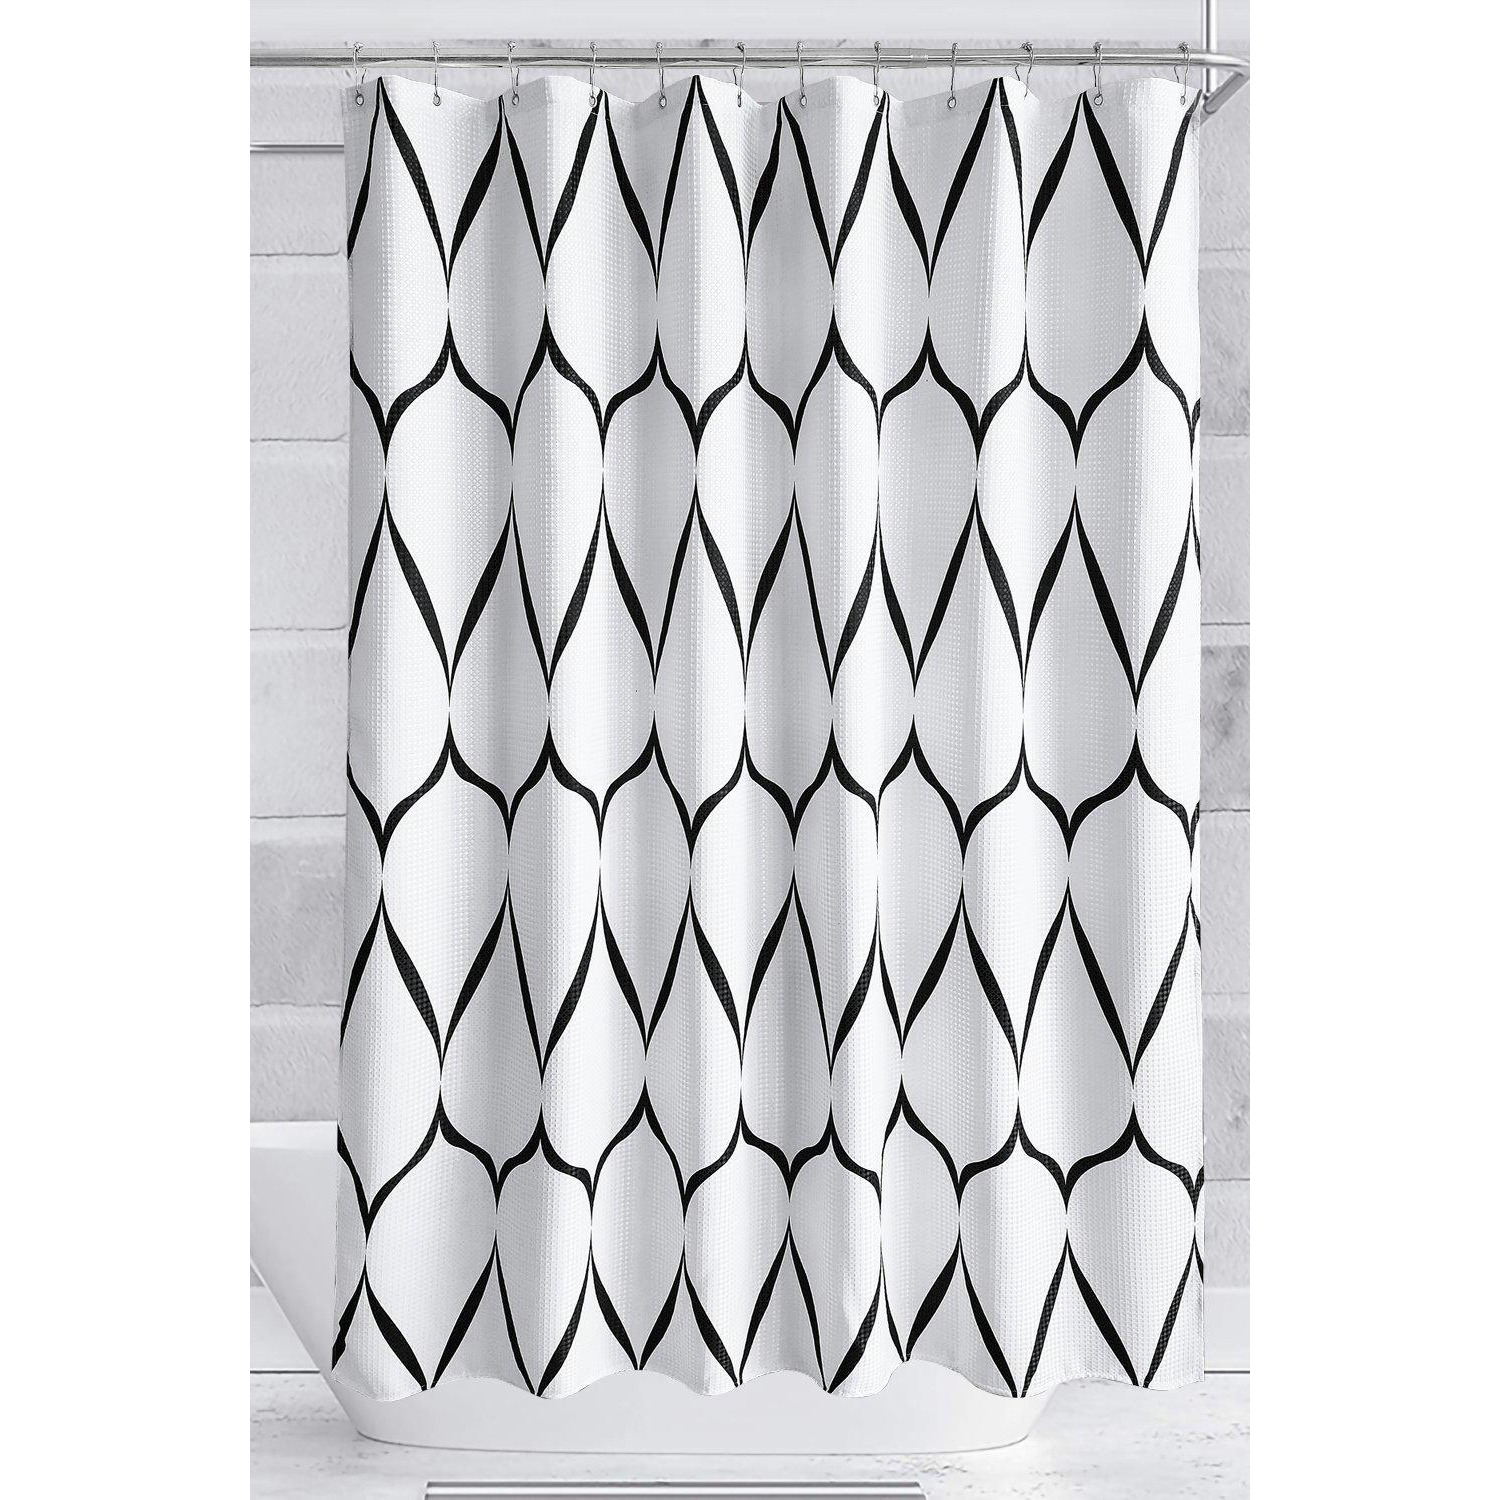 Lattice Design Shower Curtain, White & Black - 180cm x 180cm - image 1